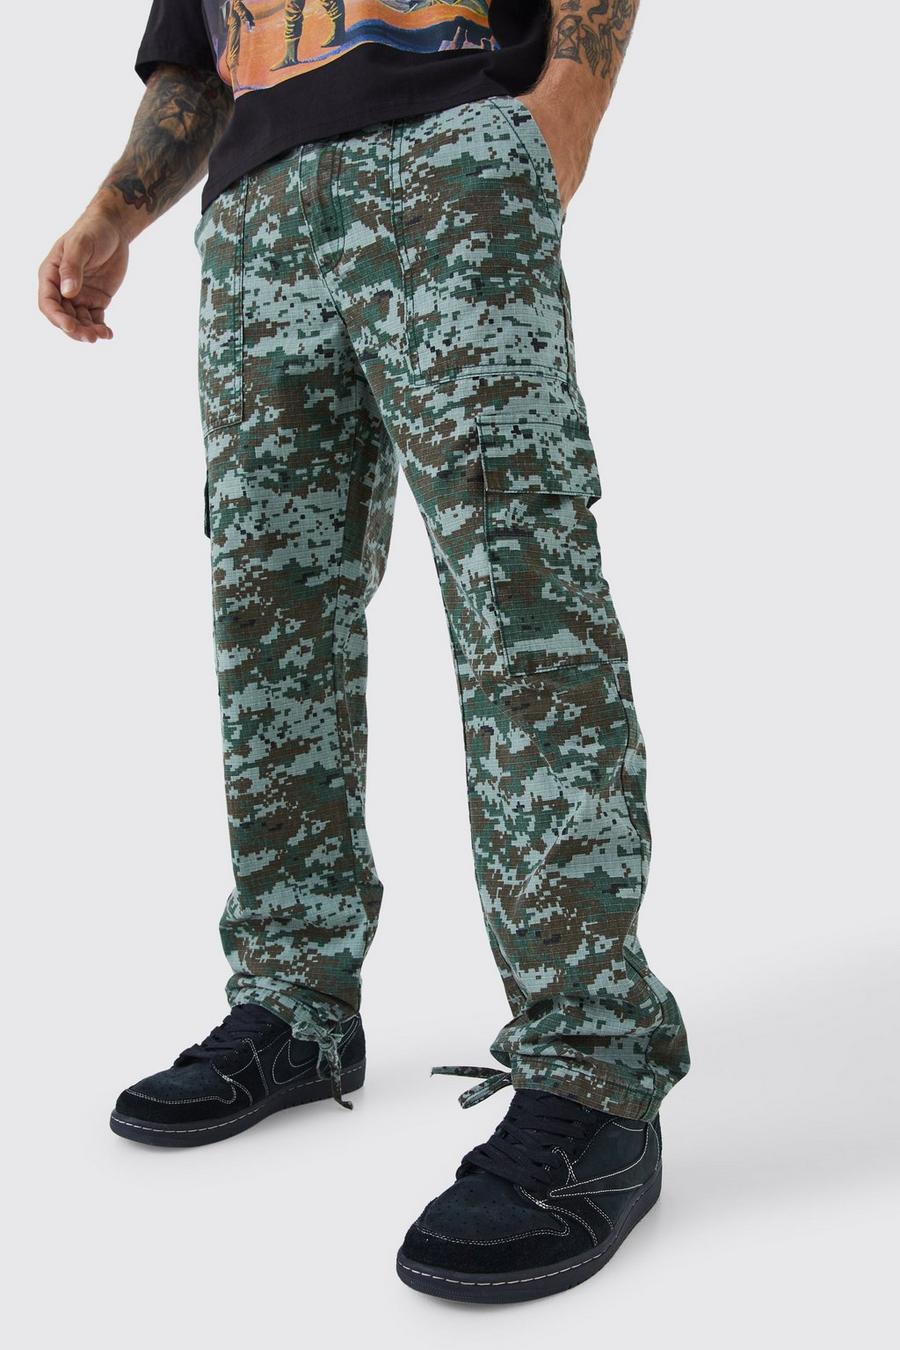 Pantaloni dritti in fantasia militare con laccetti sul fondo, Khaki